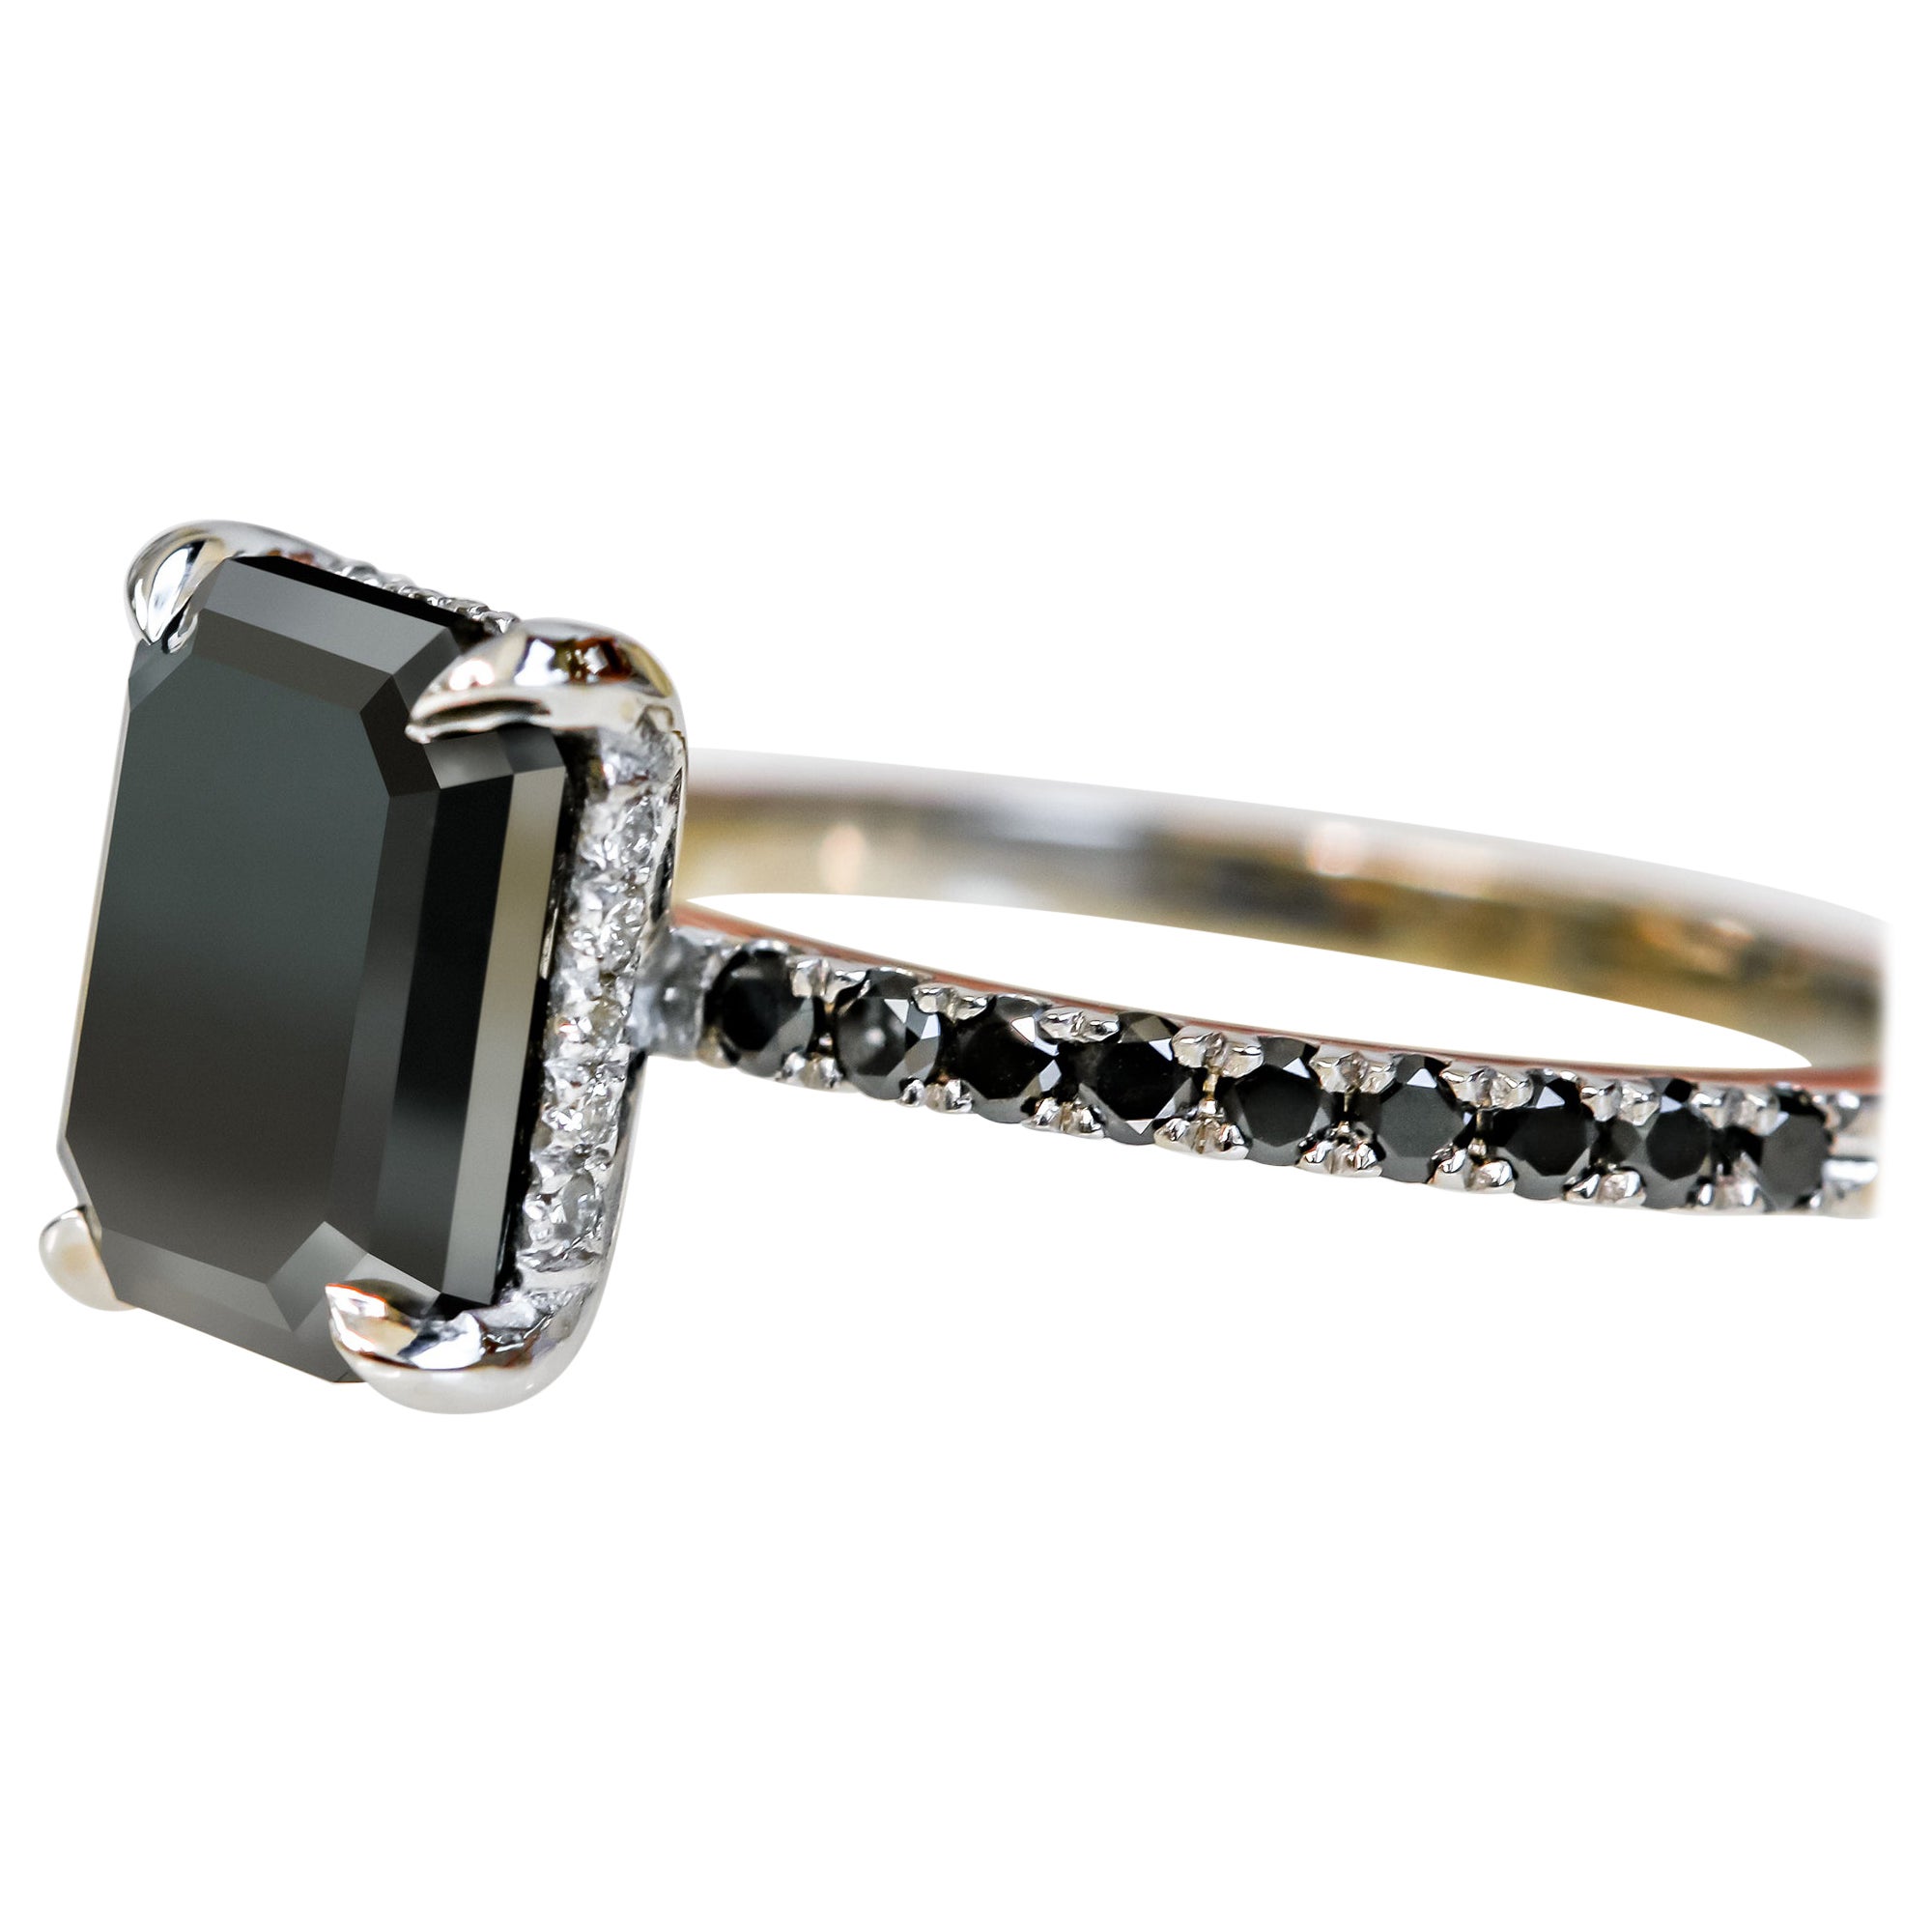 Noir Mystique Unique Natural Black Diamond Emerald Cut Engagement Ring - 3.35 Ct For Sale